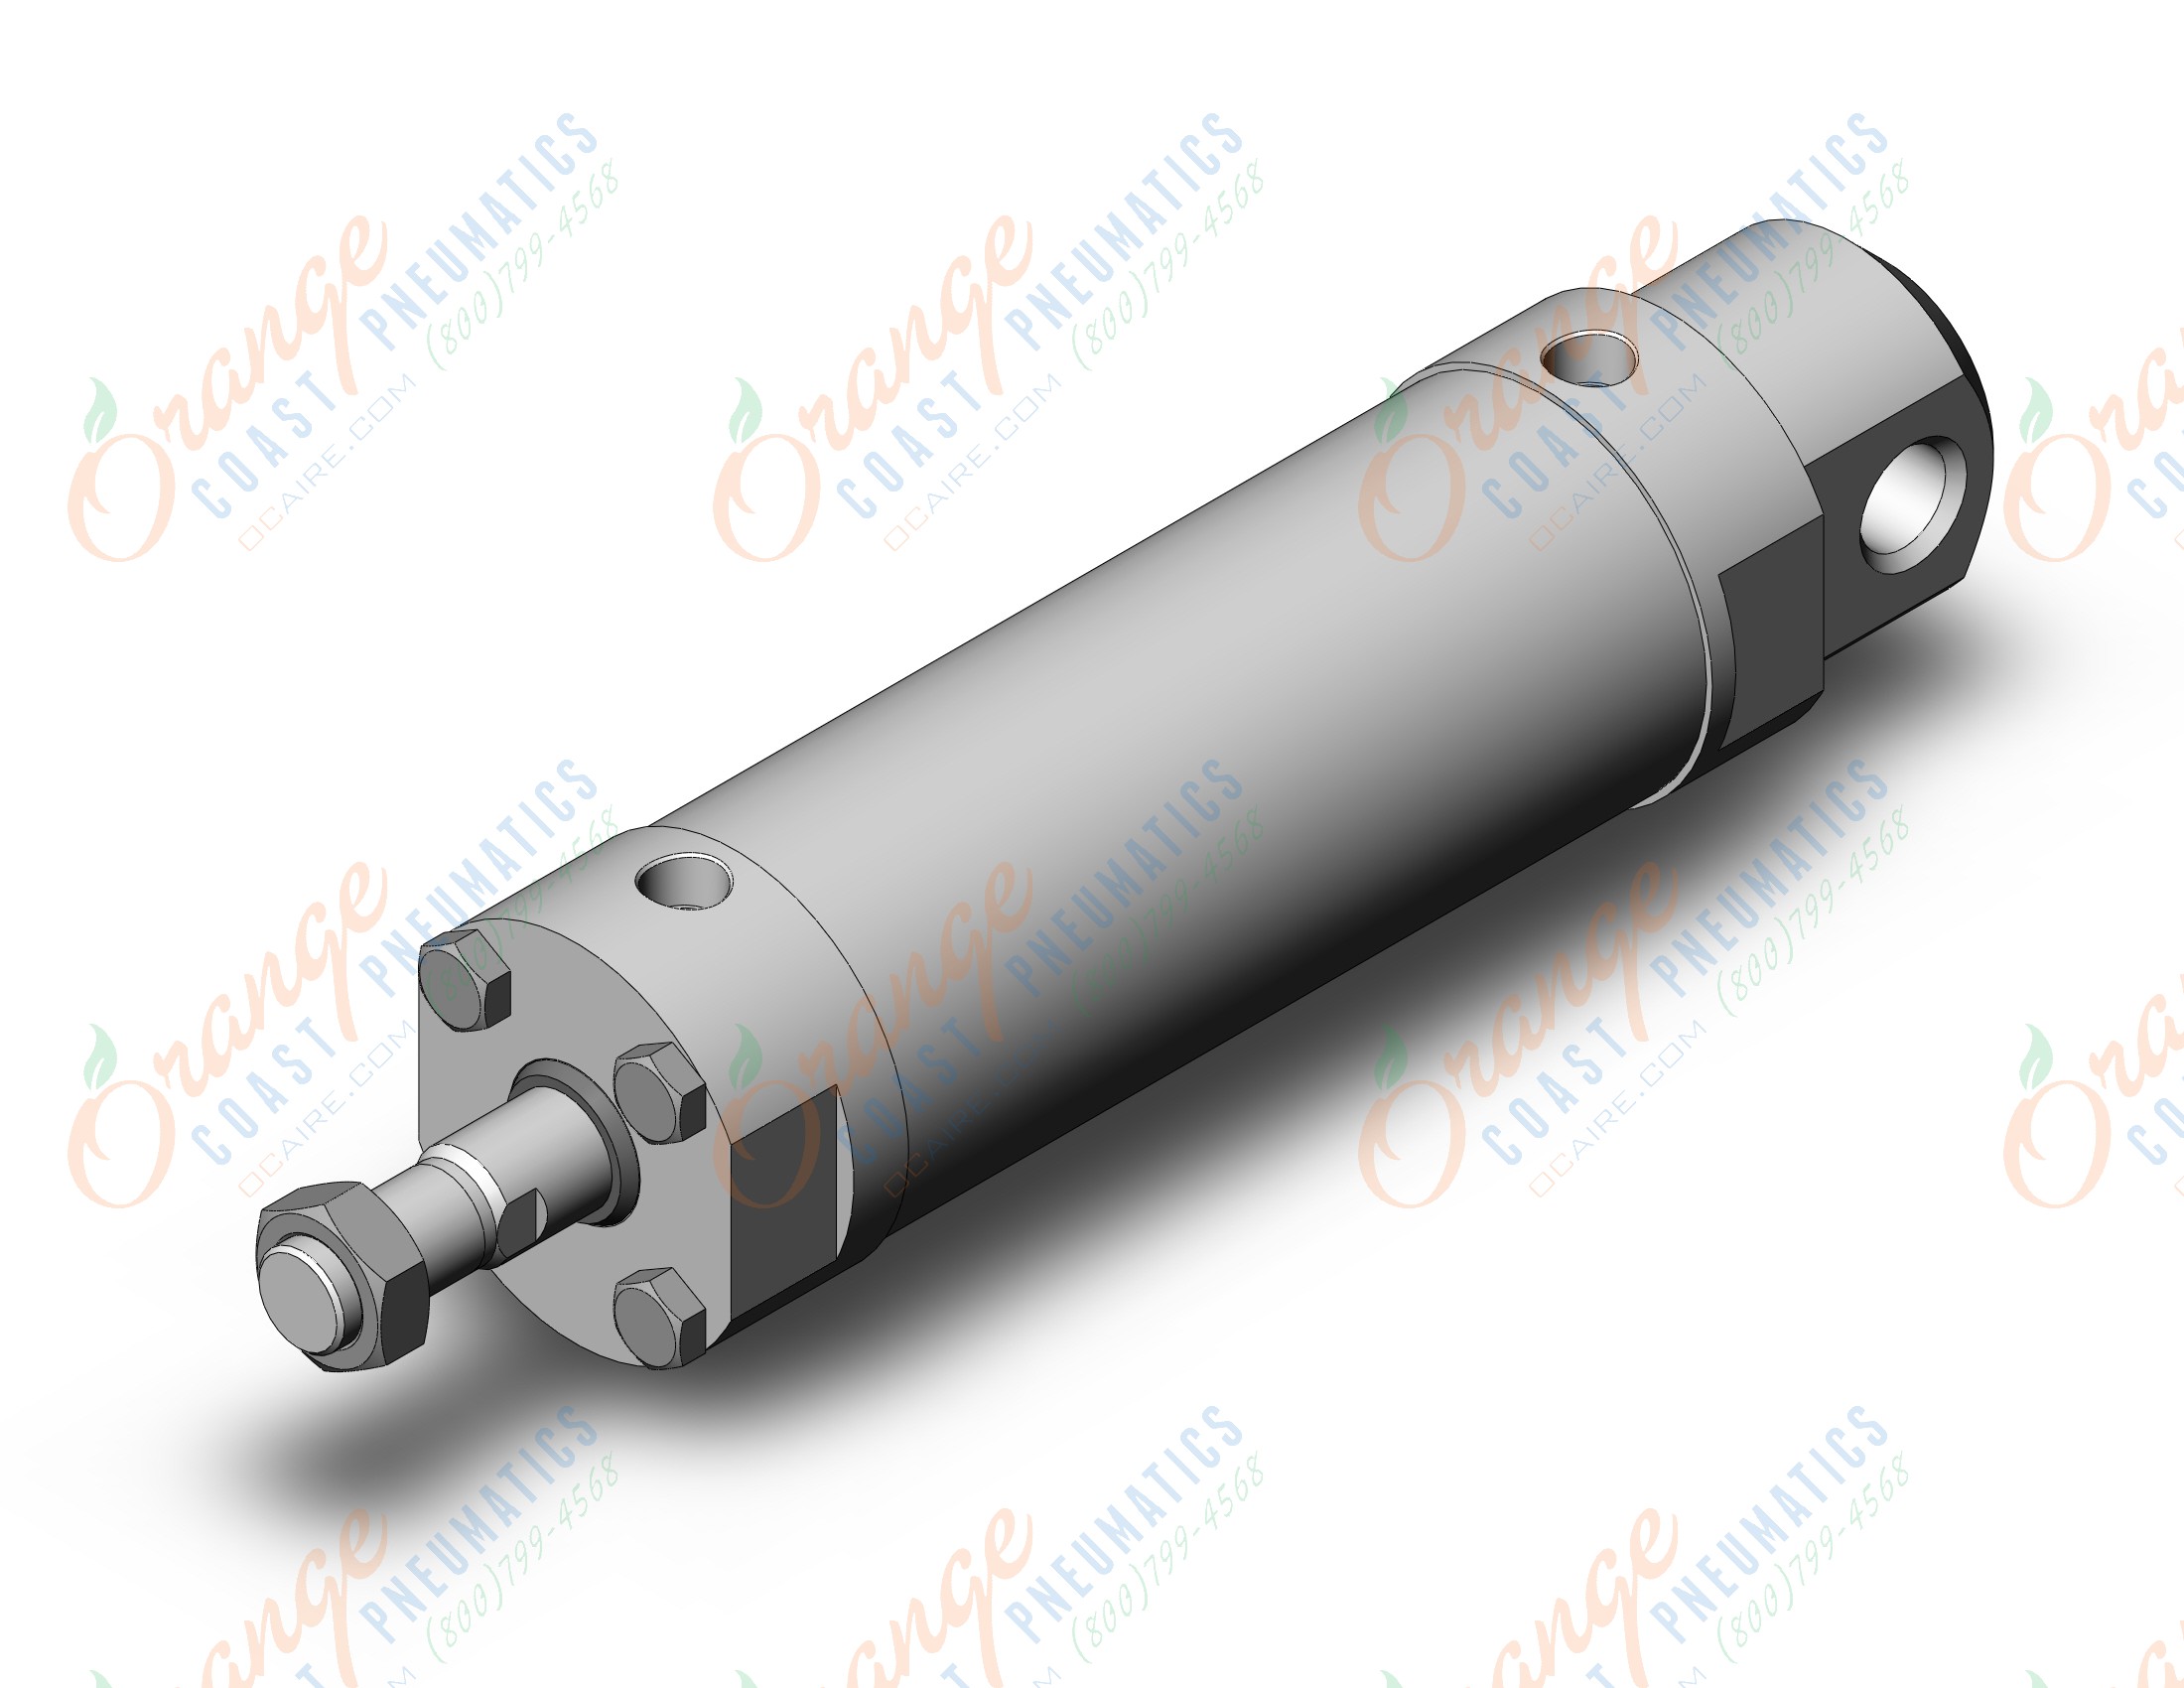 SMC CDG5EN80TNSV-150 base cylinder, CG5 CYLINDER, STAINLESS STEEL